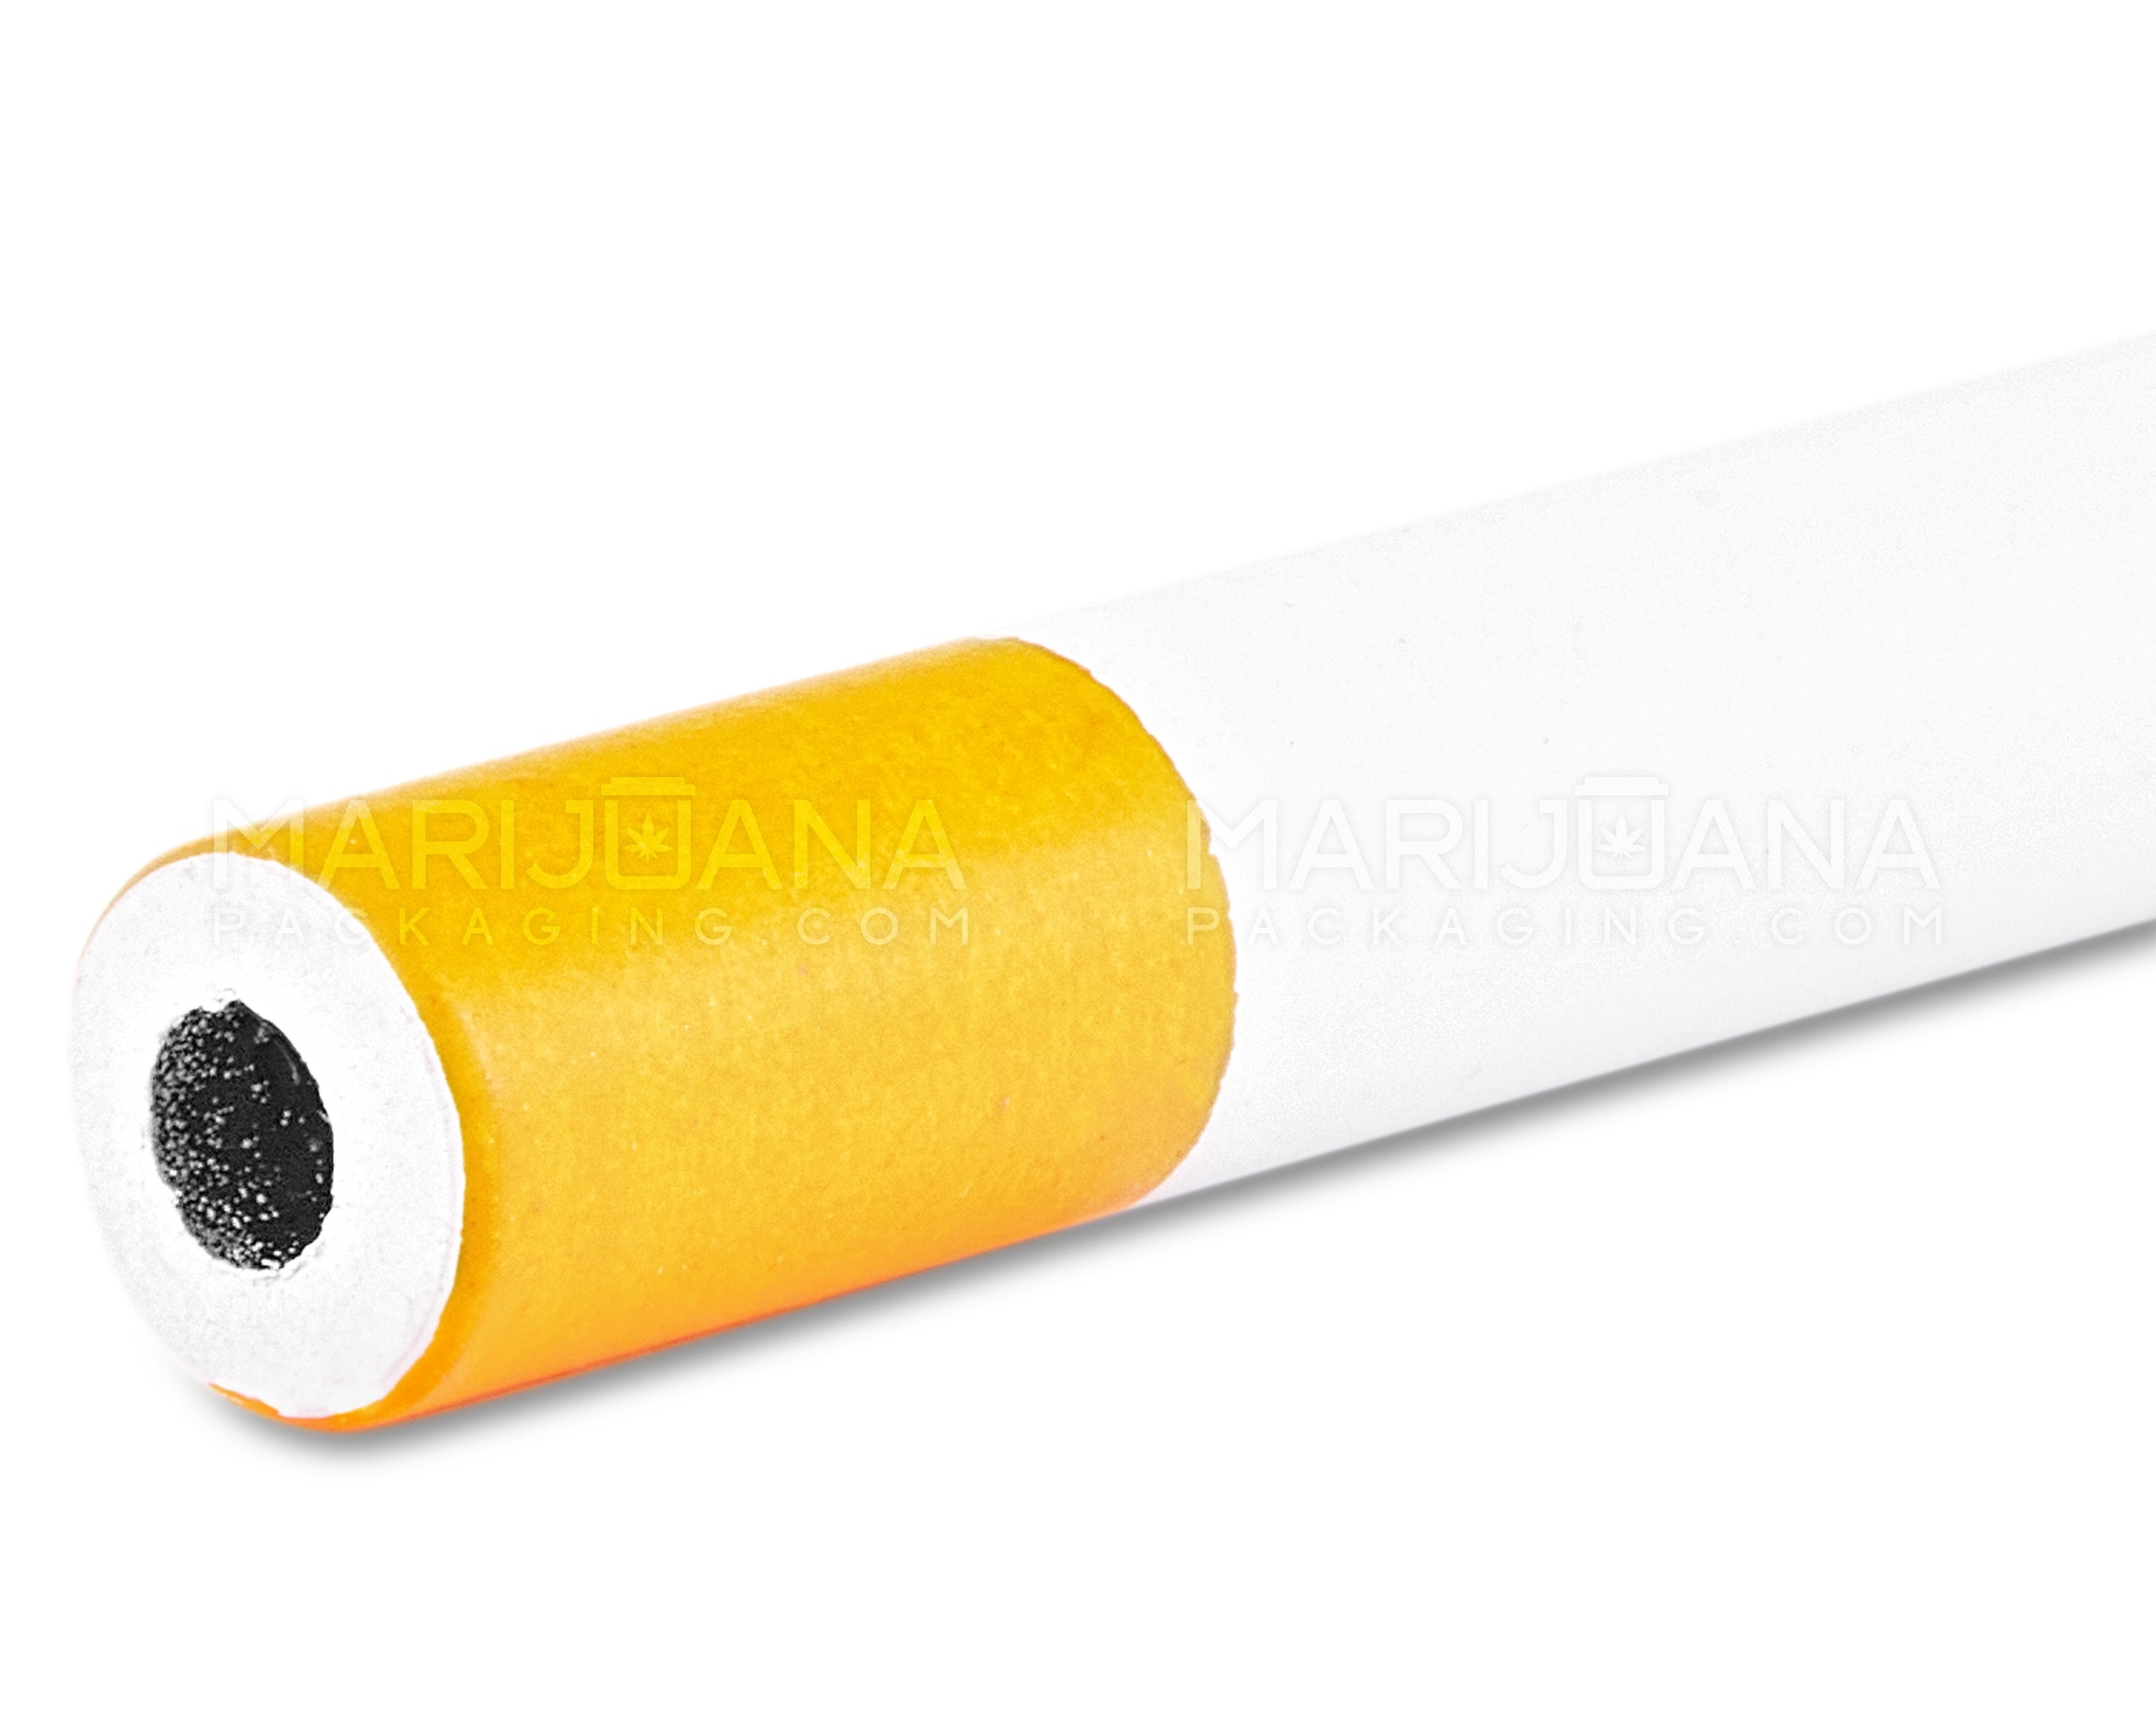 Cigarette Chillum Hand Pipe | 2.5in Long - Metal - Orange & White - 6